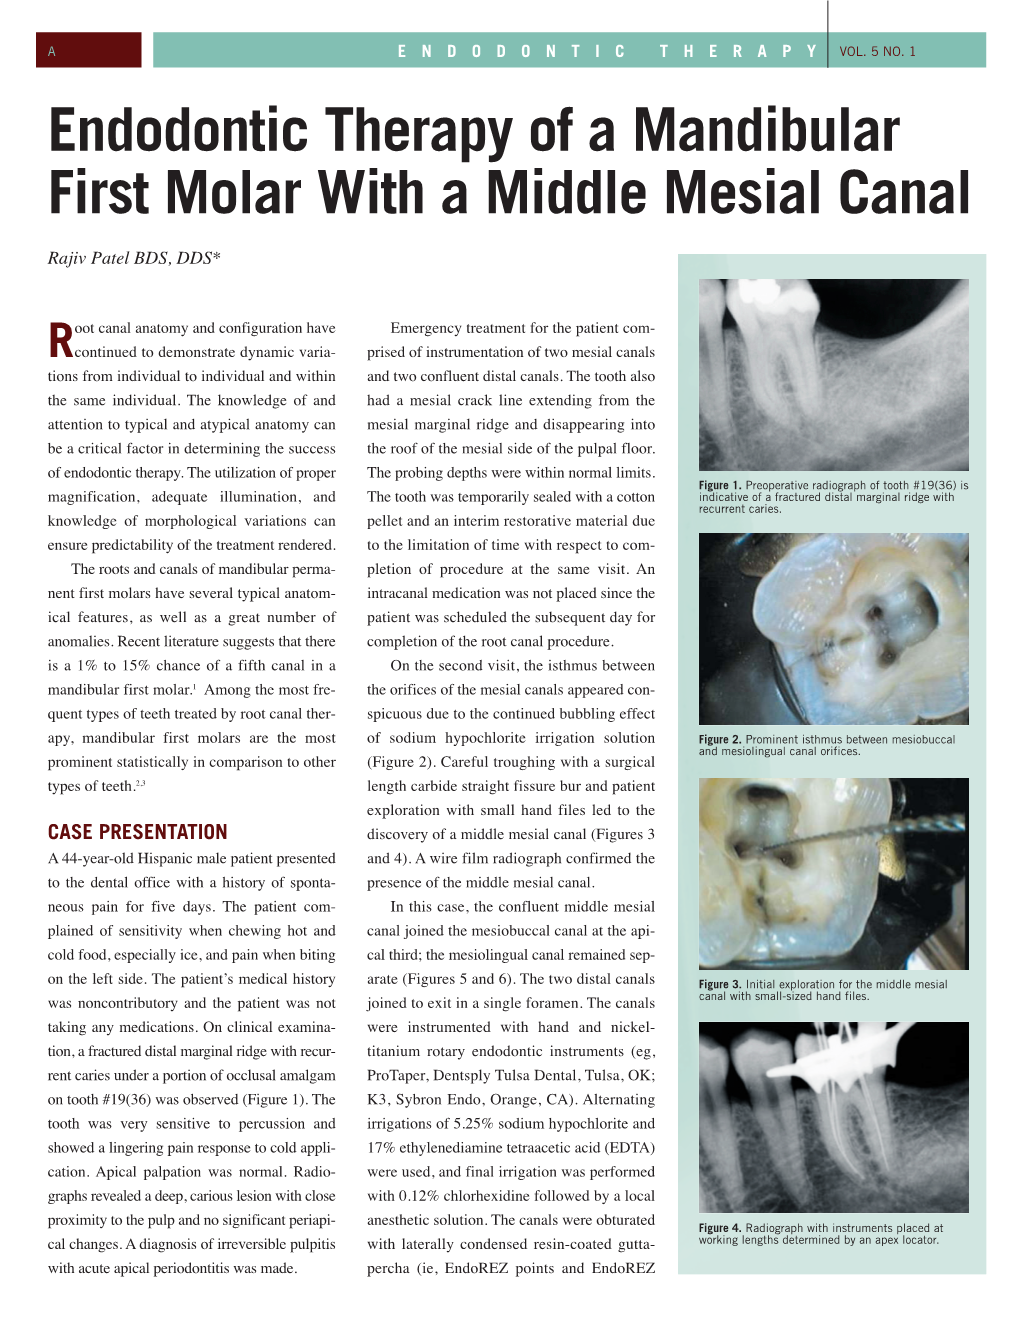 Middle Mesial Canal in a Mandibular Molar